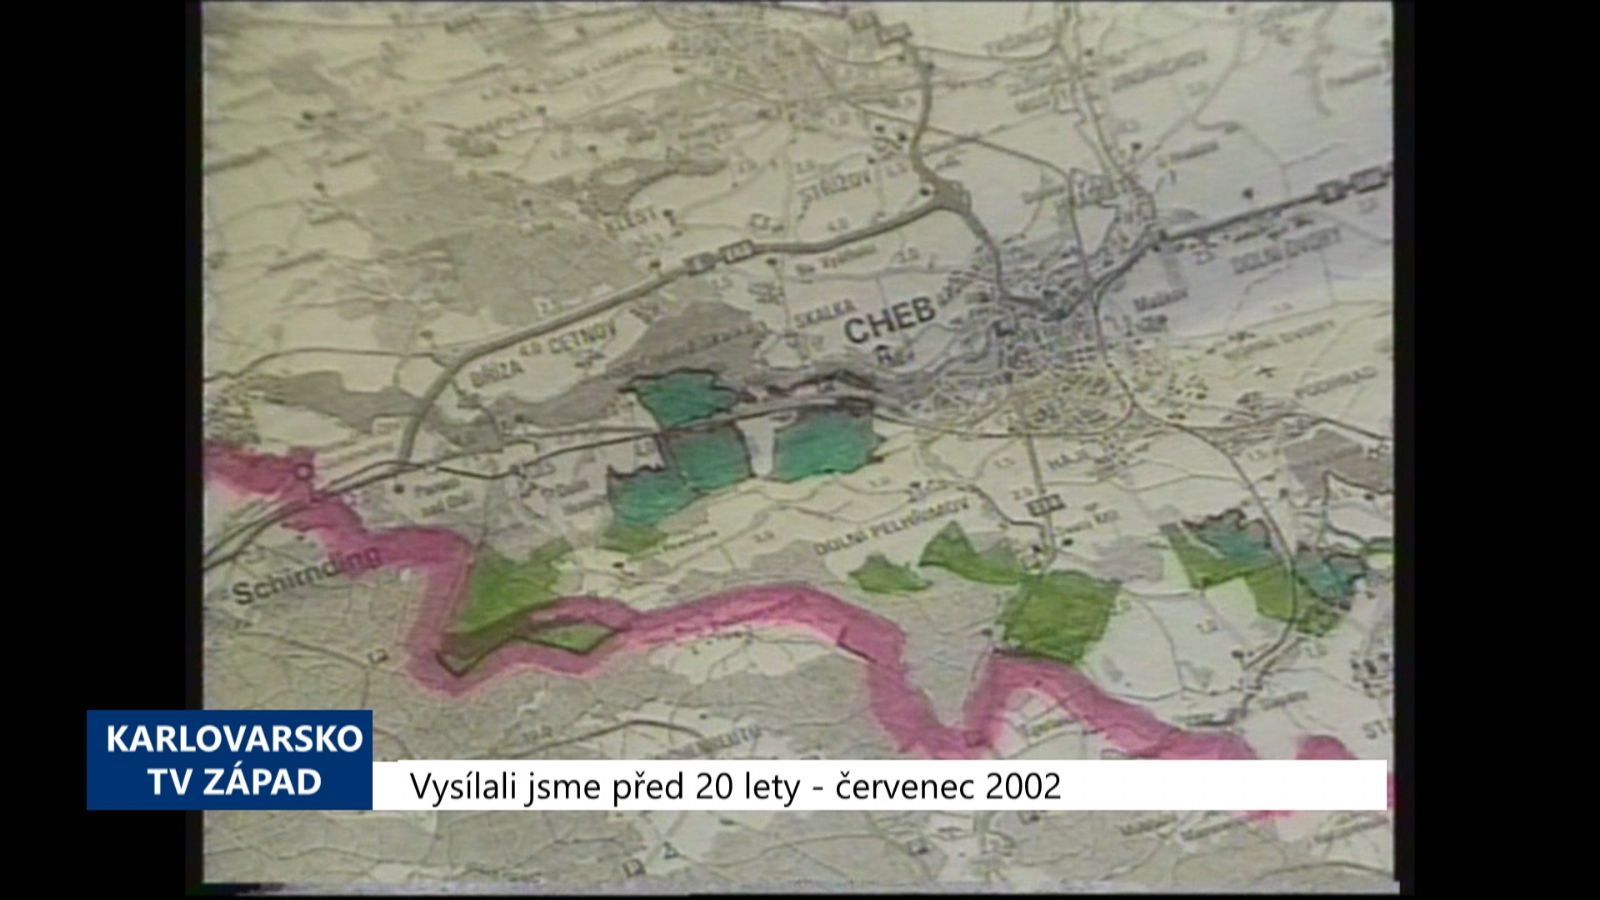 2002 – Cheb: Město převzalo 400 hektarů lesa do svého majetku (TV Západ)